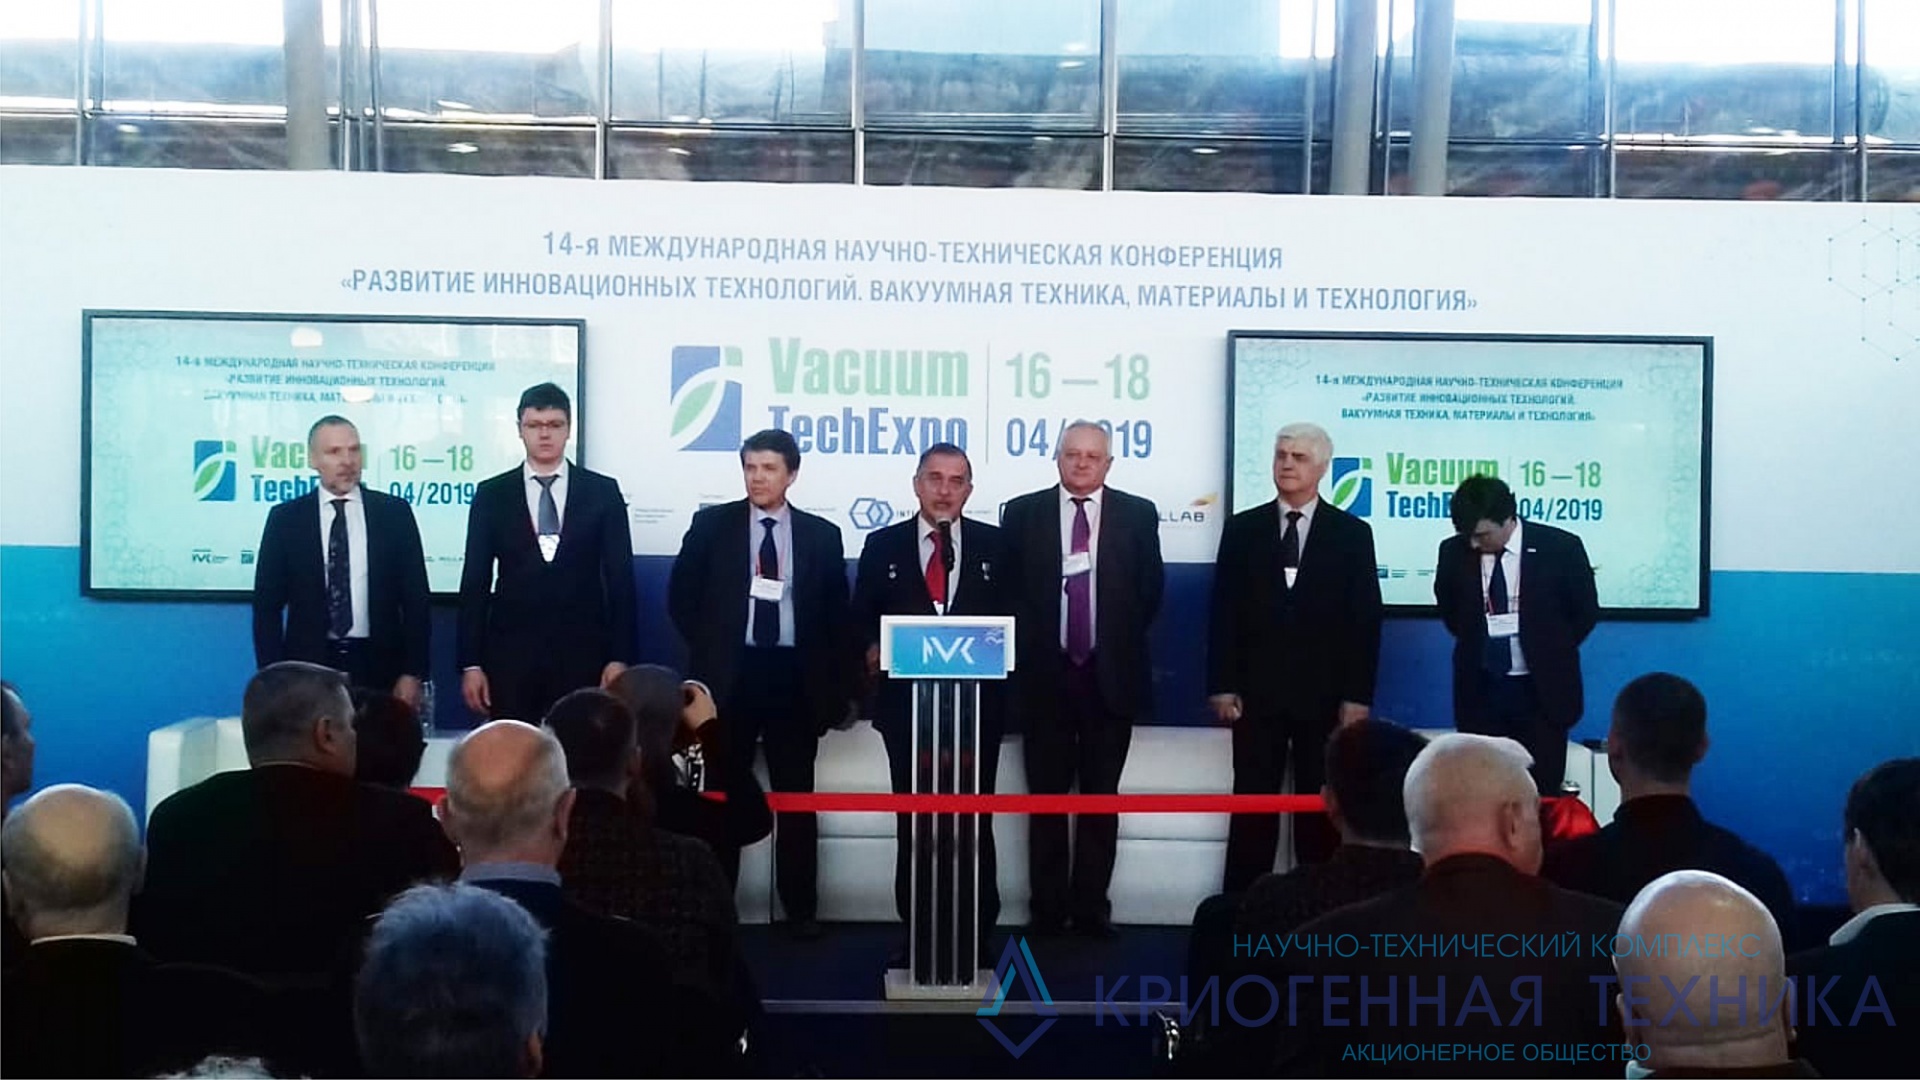 Участие АО "НТК "Криогенная техника" в выставке "VacuumTechExpo 2019"